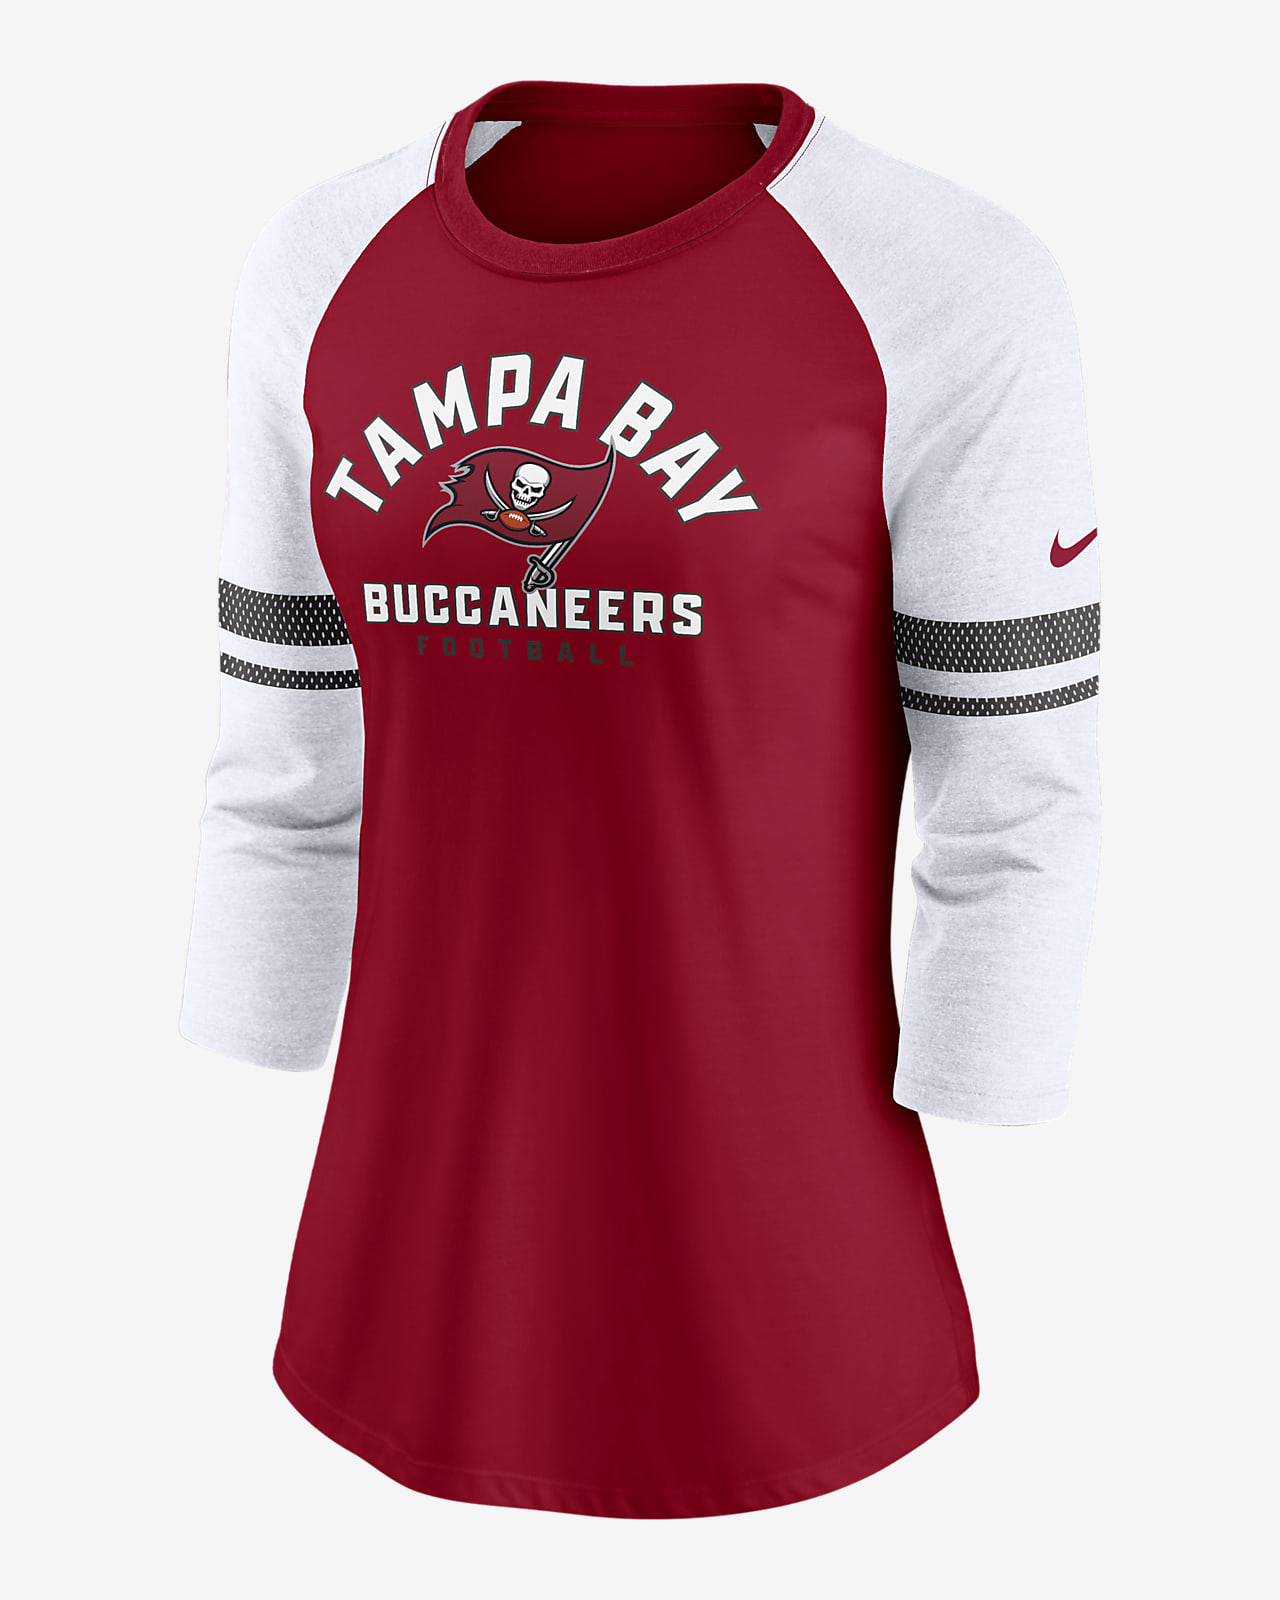 buccaneers shirt women's